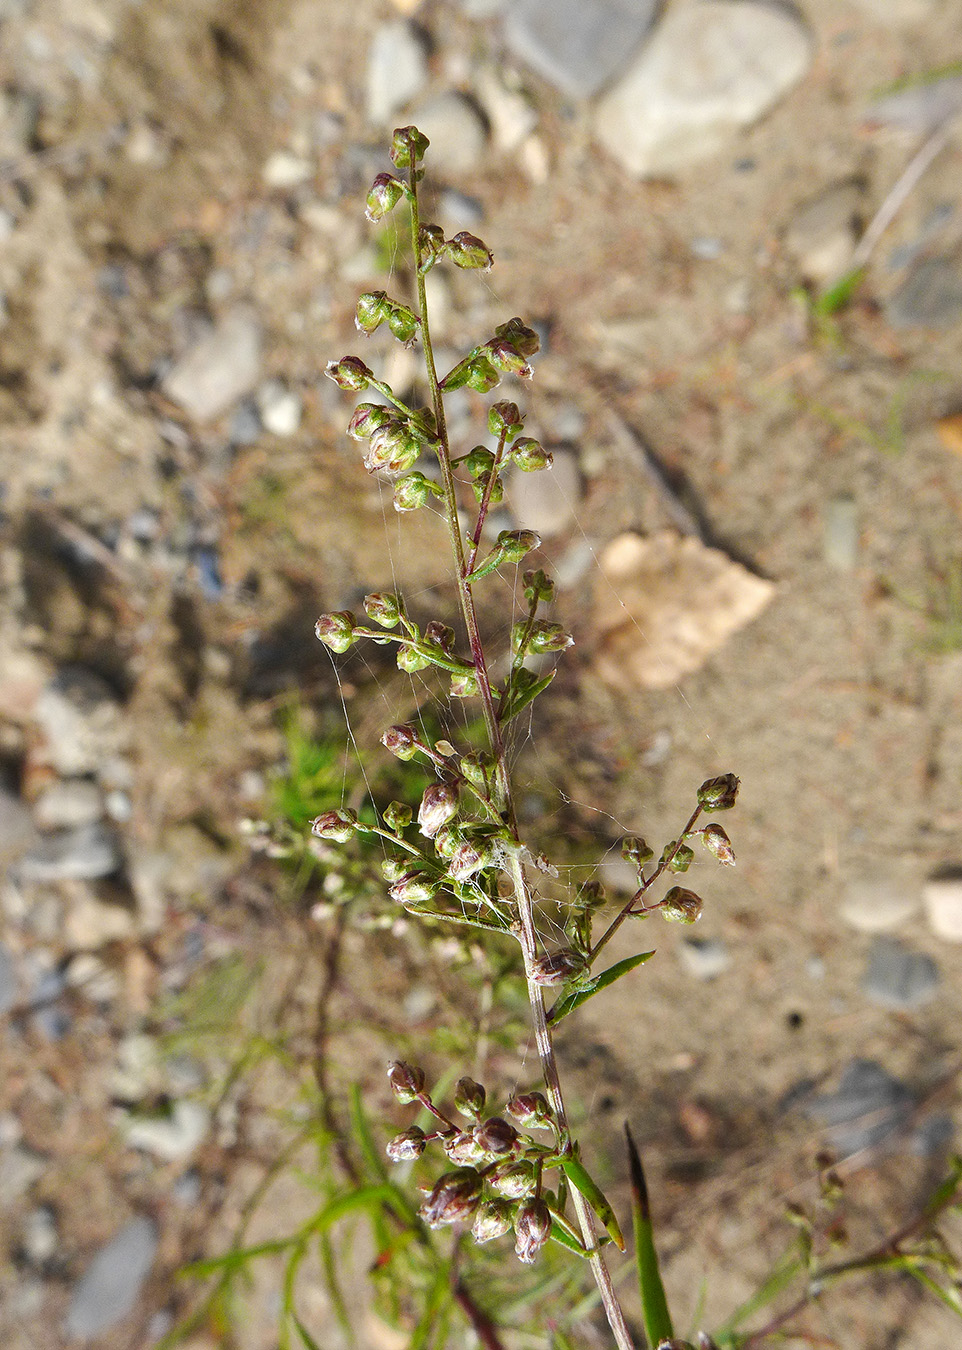 Image of Artemisia desertorum specimen.